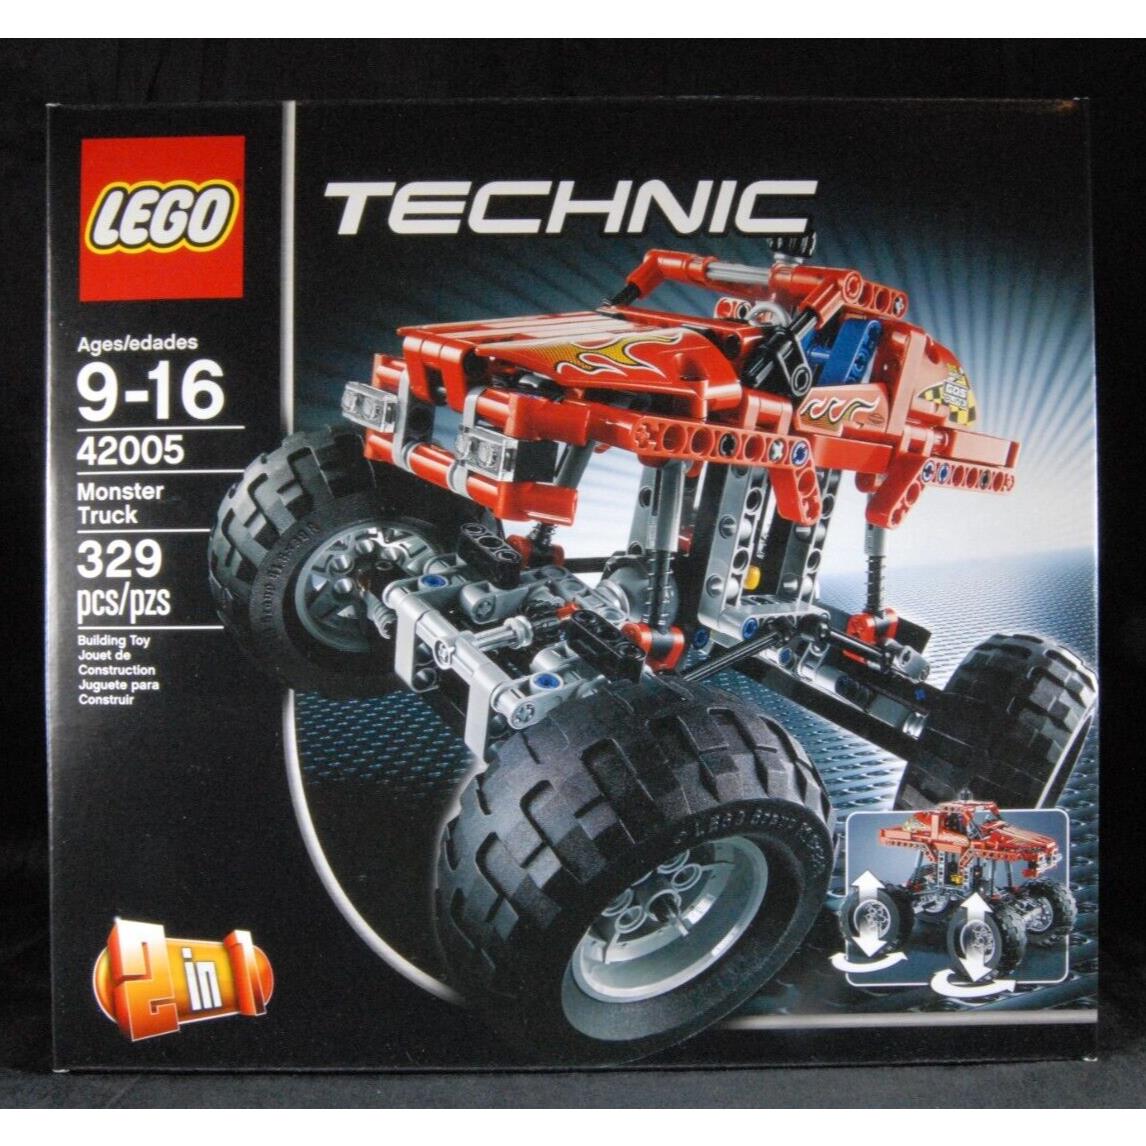 Lego Technic Monster Truck 42005 Retired Rare